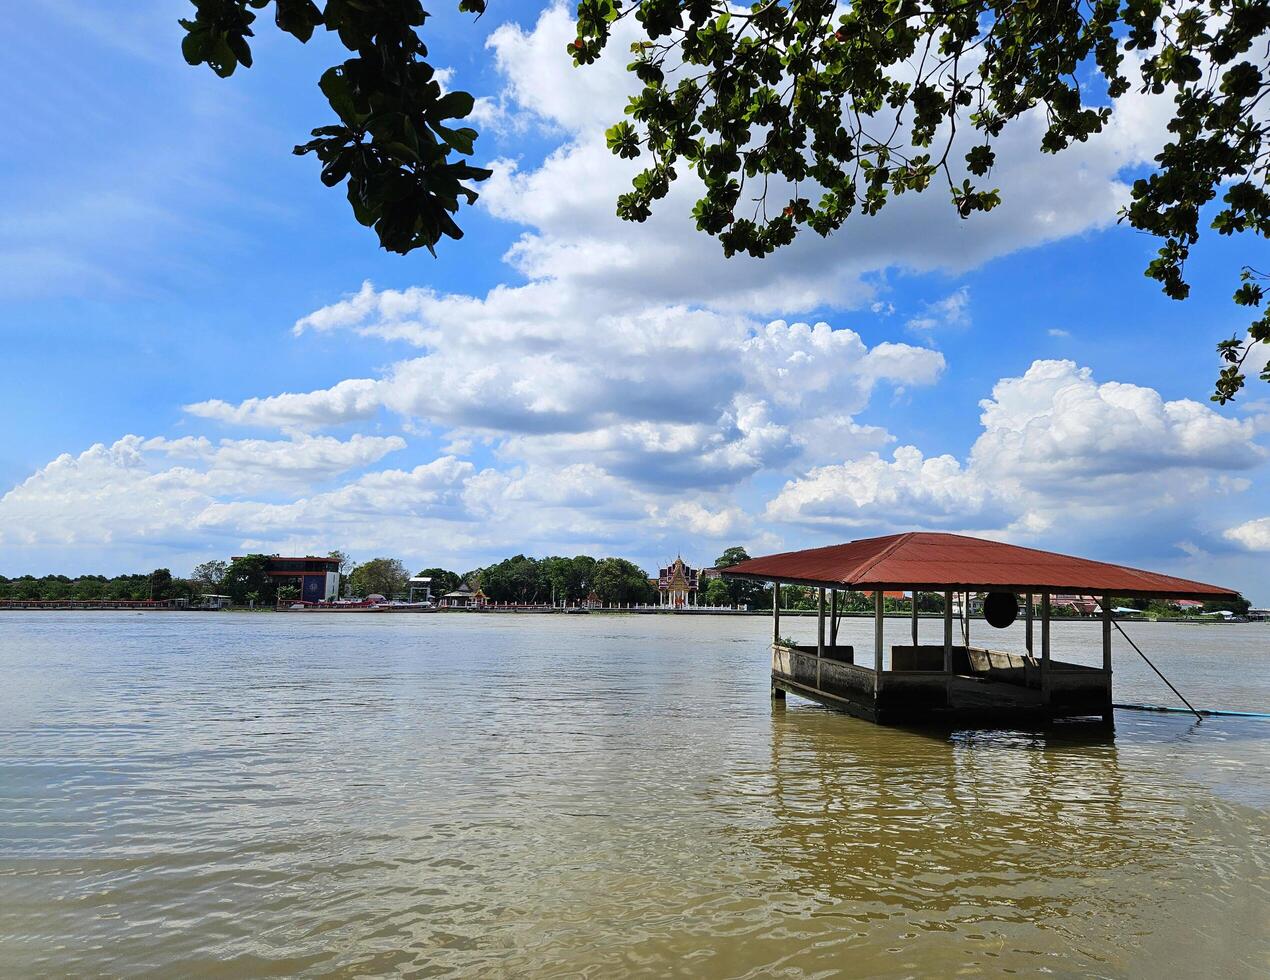 Visão do a chao phraya rio com casas ou pavilhões inundado dentro rio com azul céu e nuvem fundo e ramo do árvore primeiro plano às nonthaburi, tailândia. paisagem, natureza e construção. foto